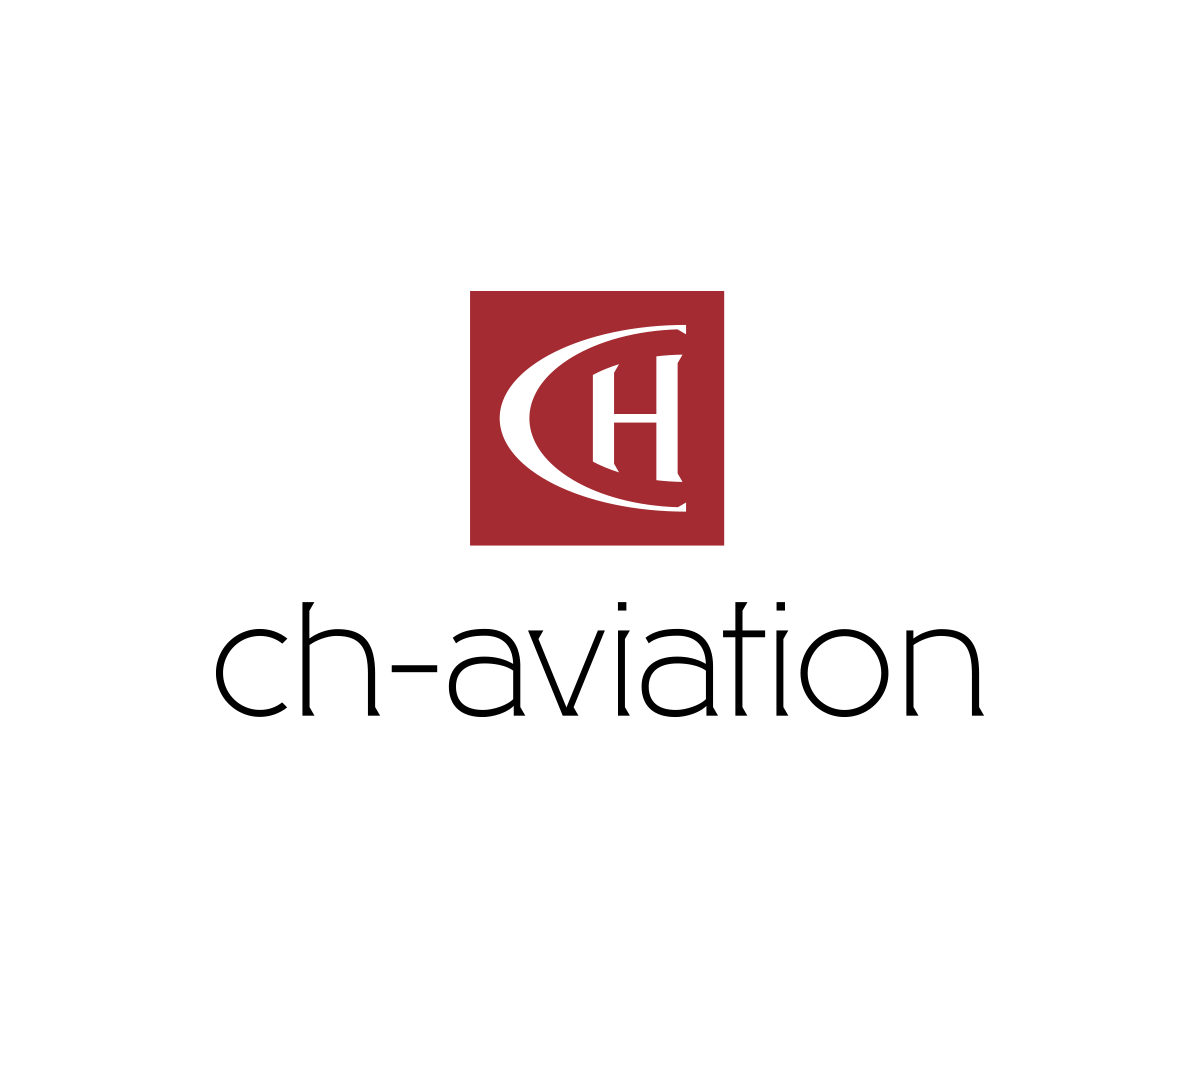 (c) Ch-aviation.com